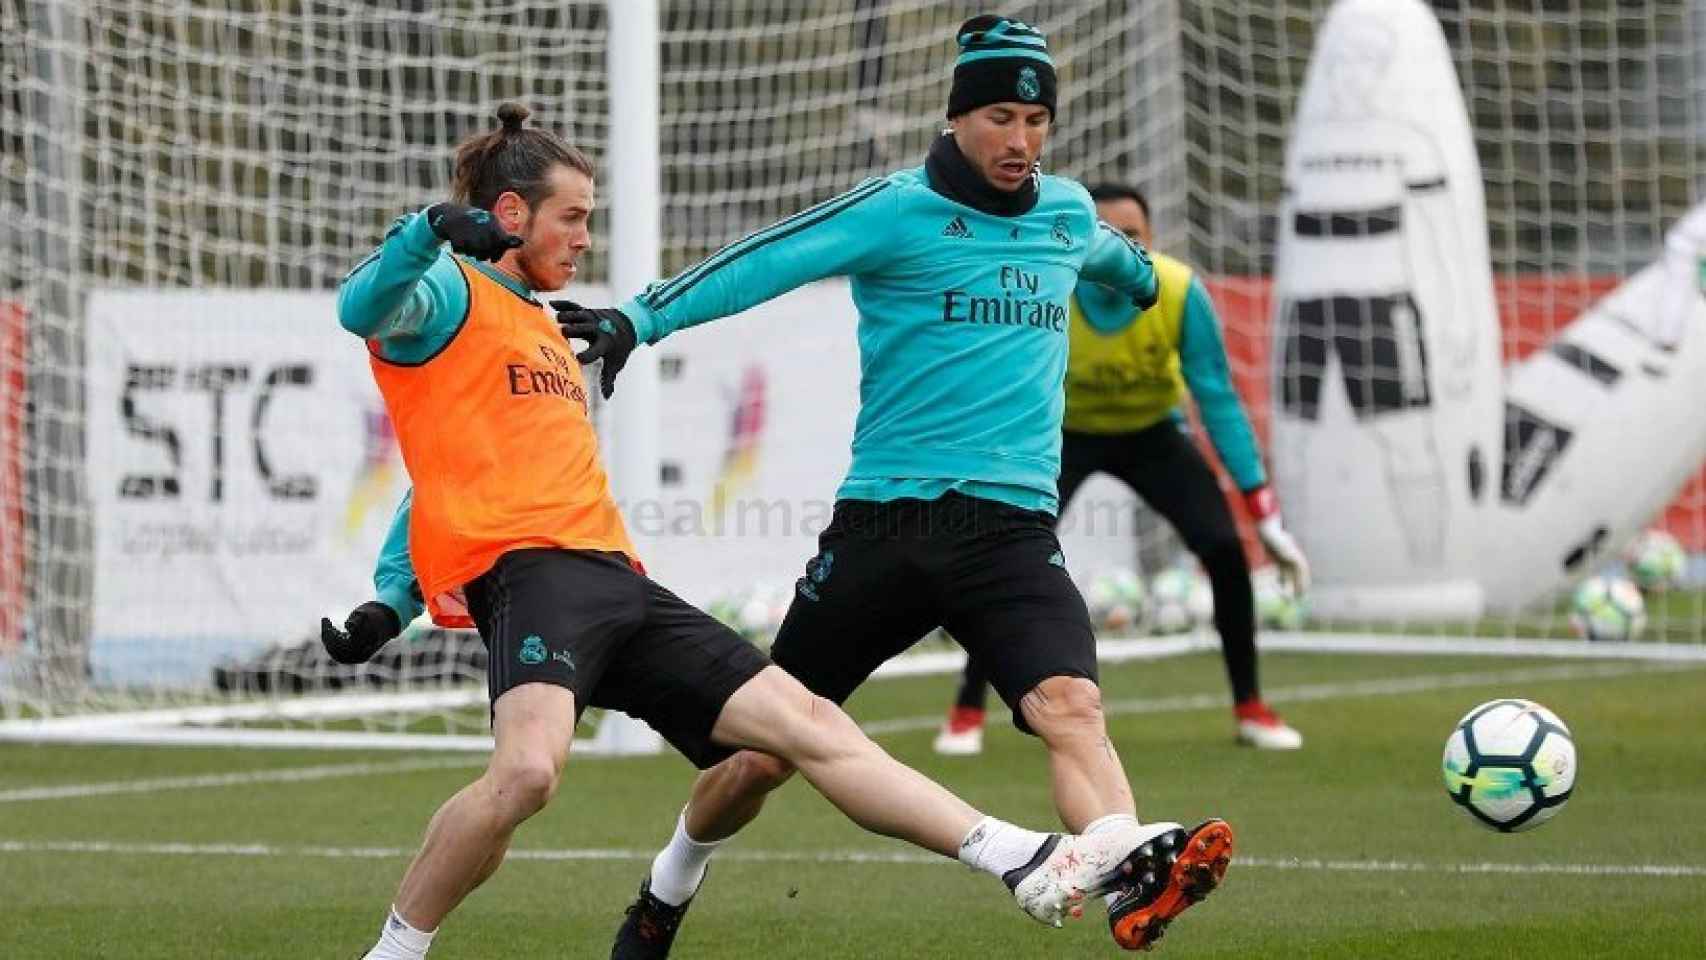 Bale y Sergio Ramos pugnan por el balón